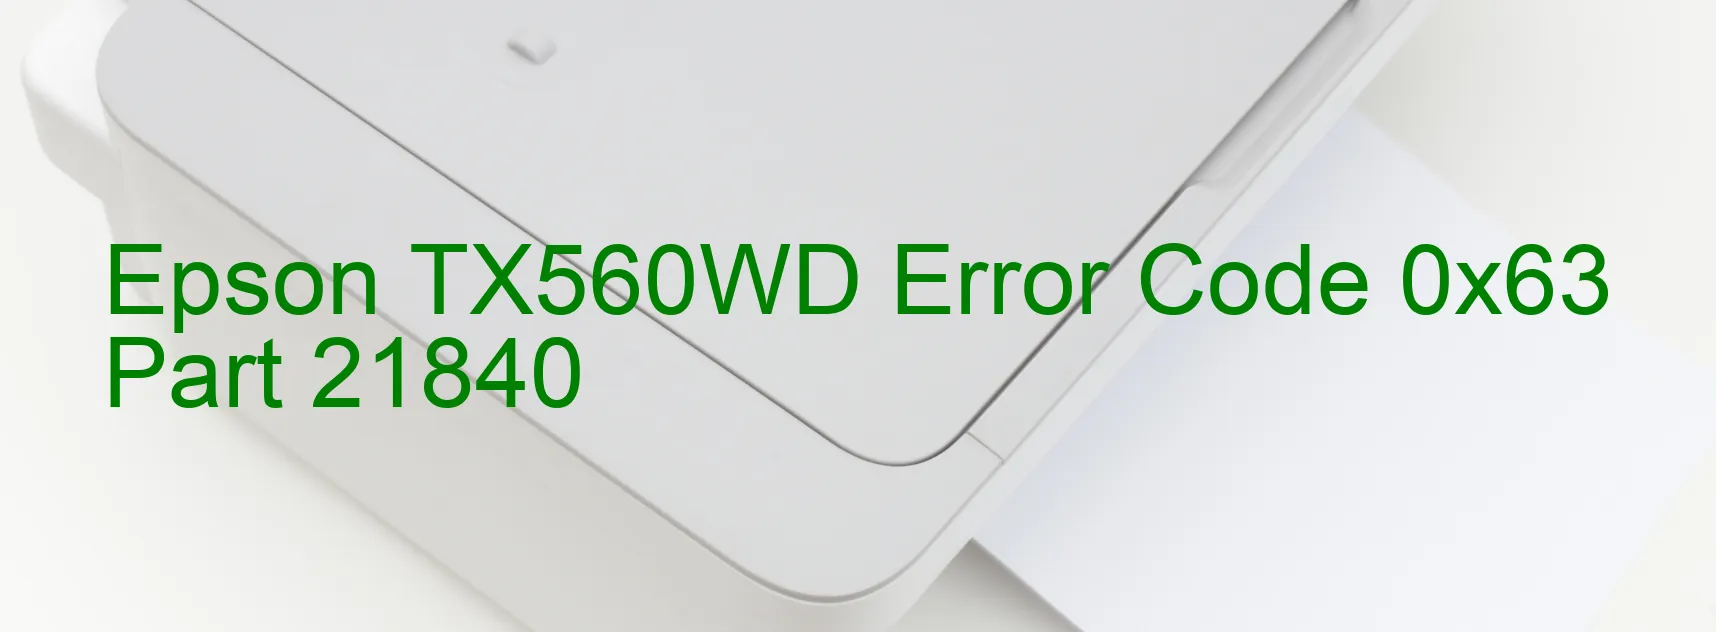 Epson TX560WD Error Code 0x63 Part 21840